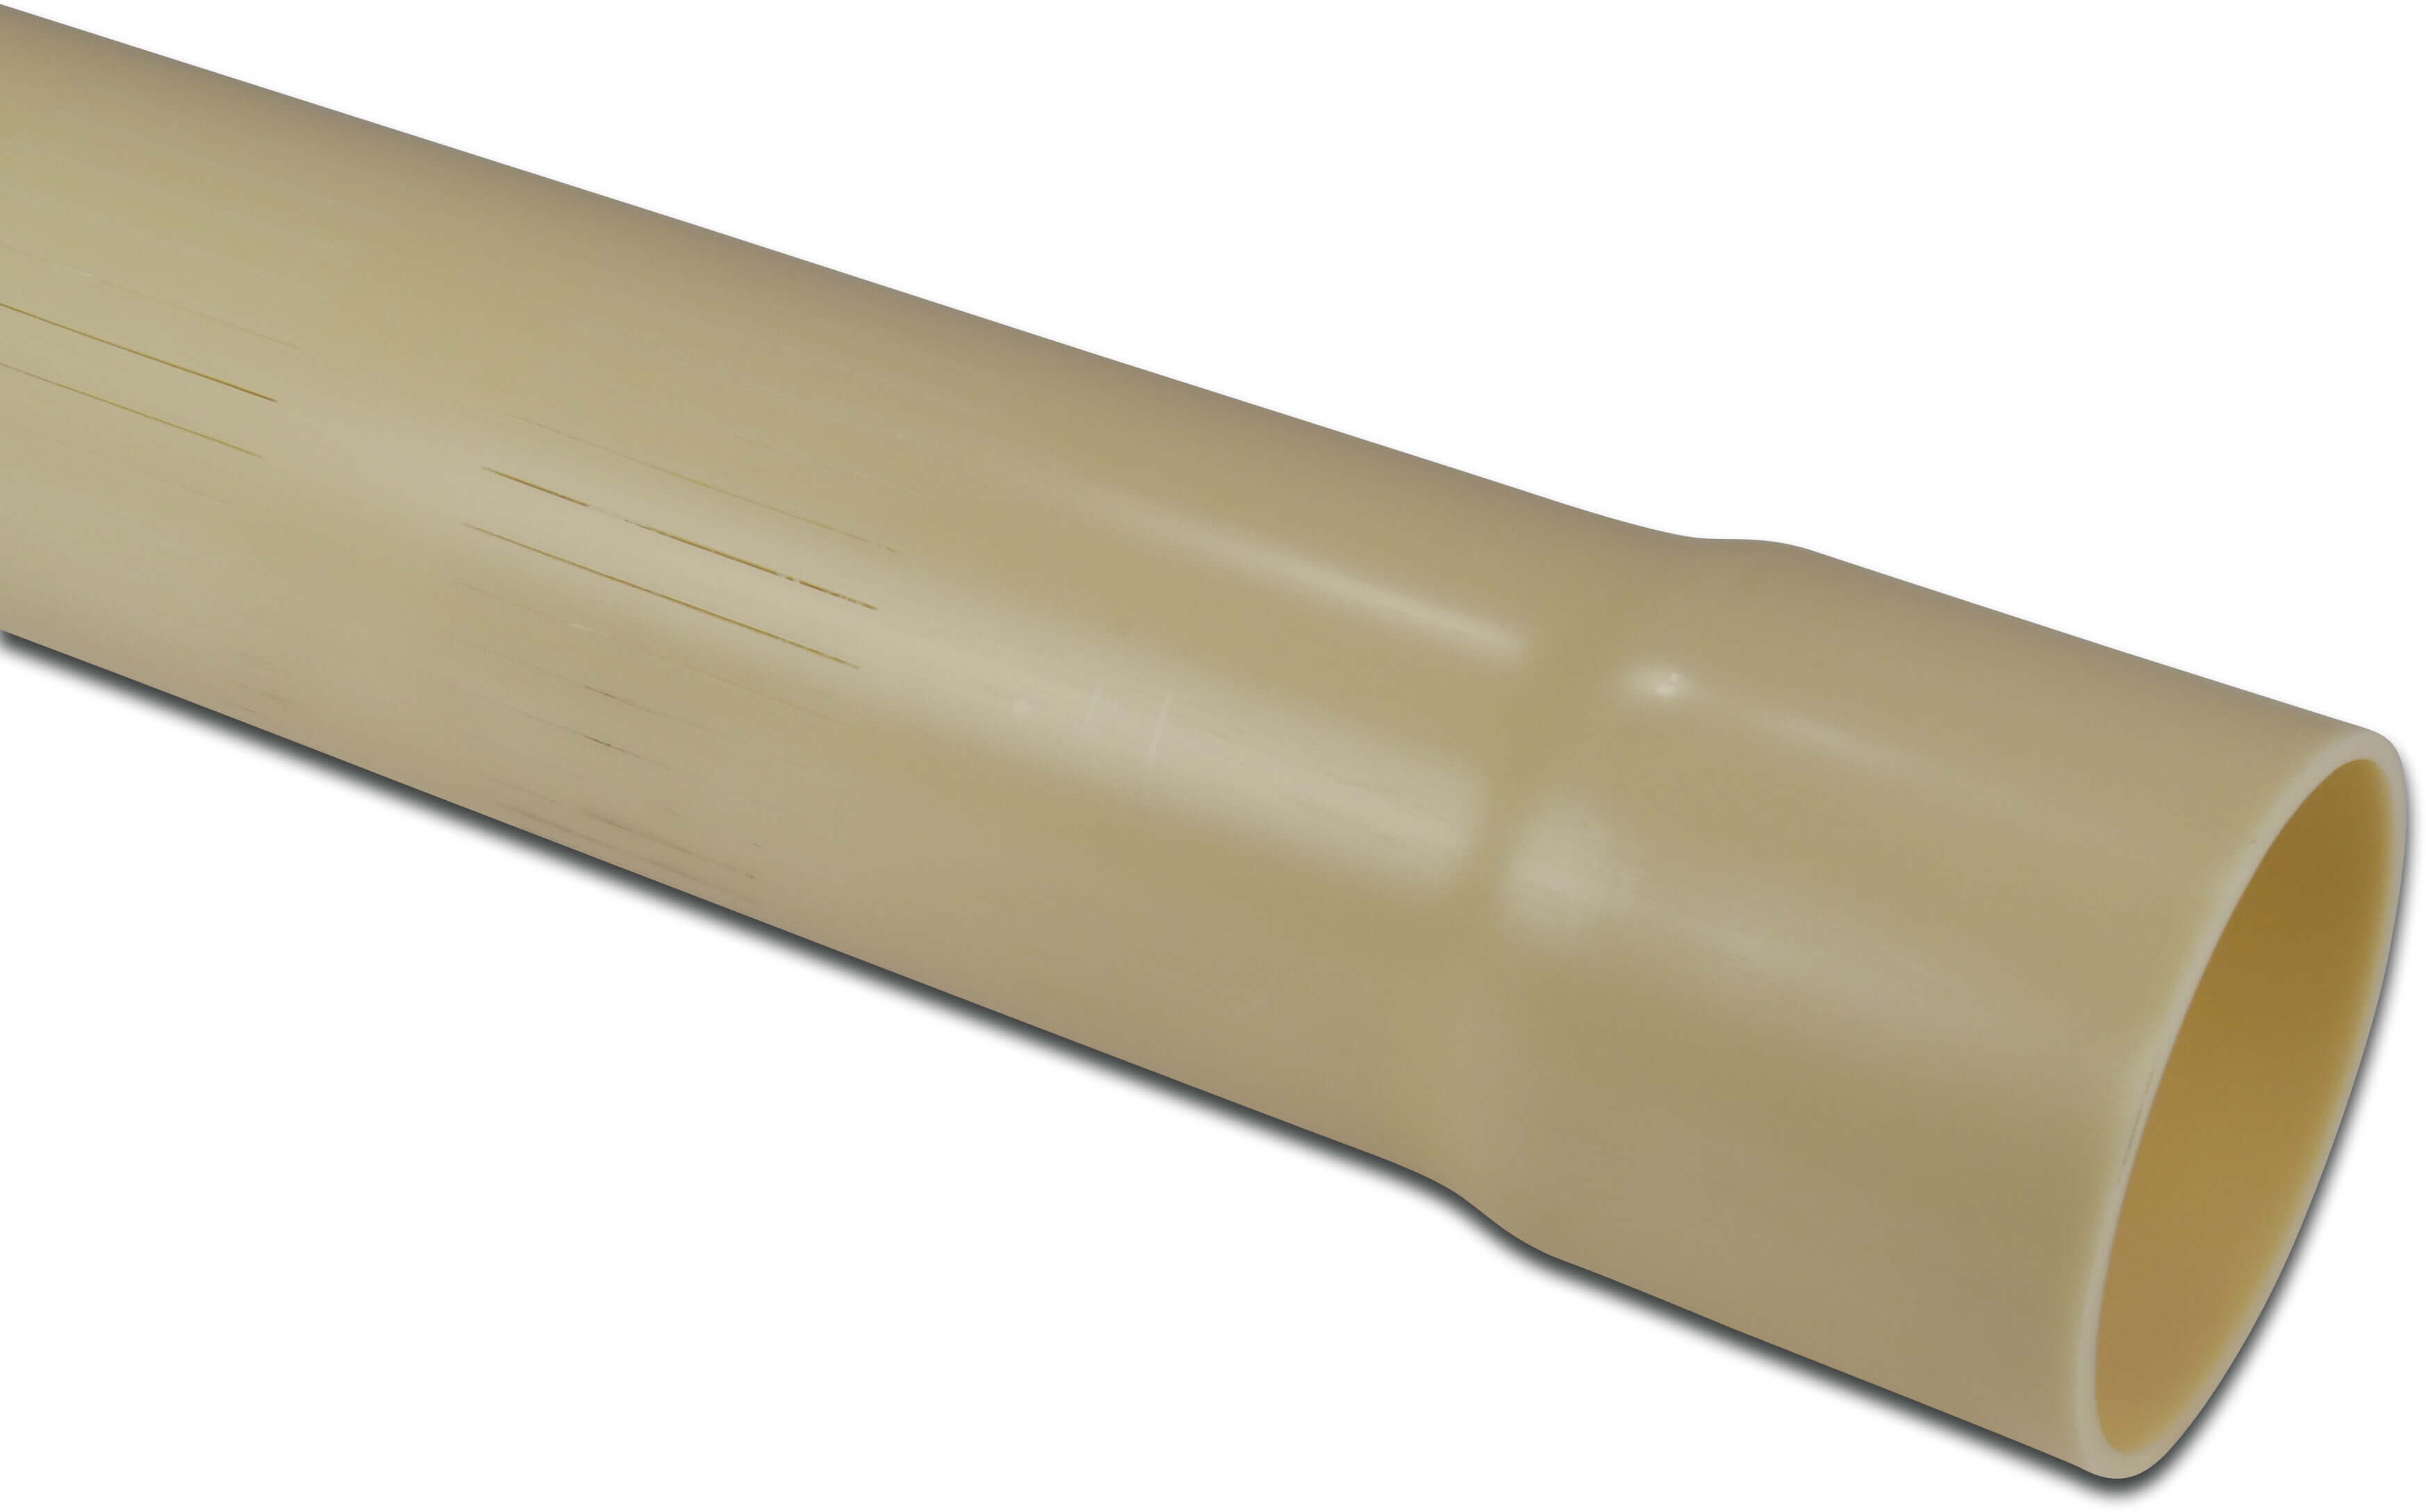 Rura szczelinowa PVC-U 125 mm x 6 mm KW x gładkie 12,5bar 5m 0,3 mm kremowy 5m